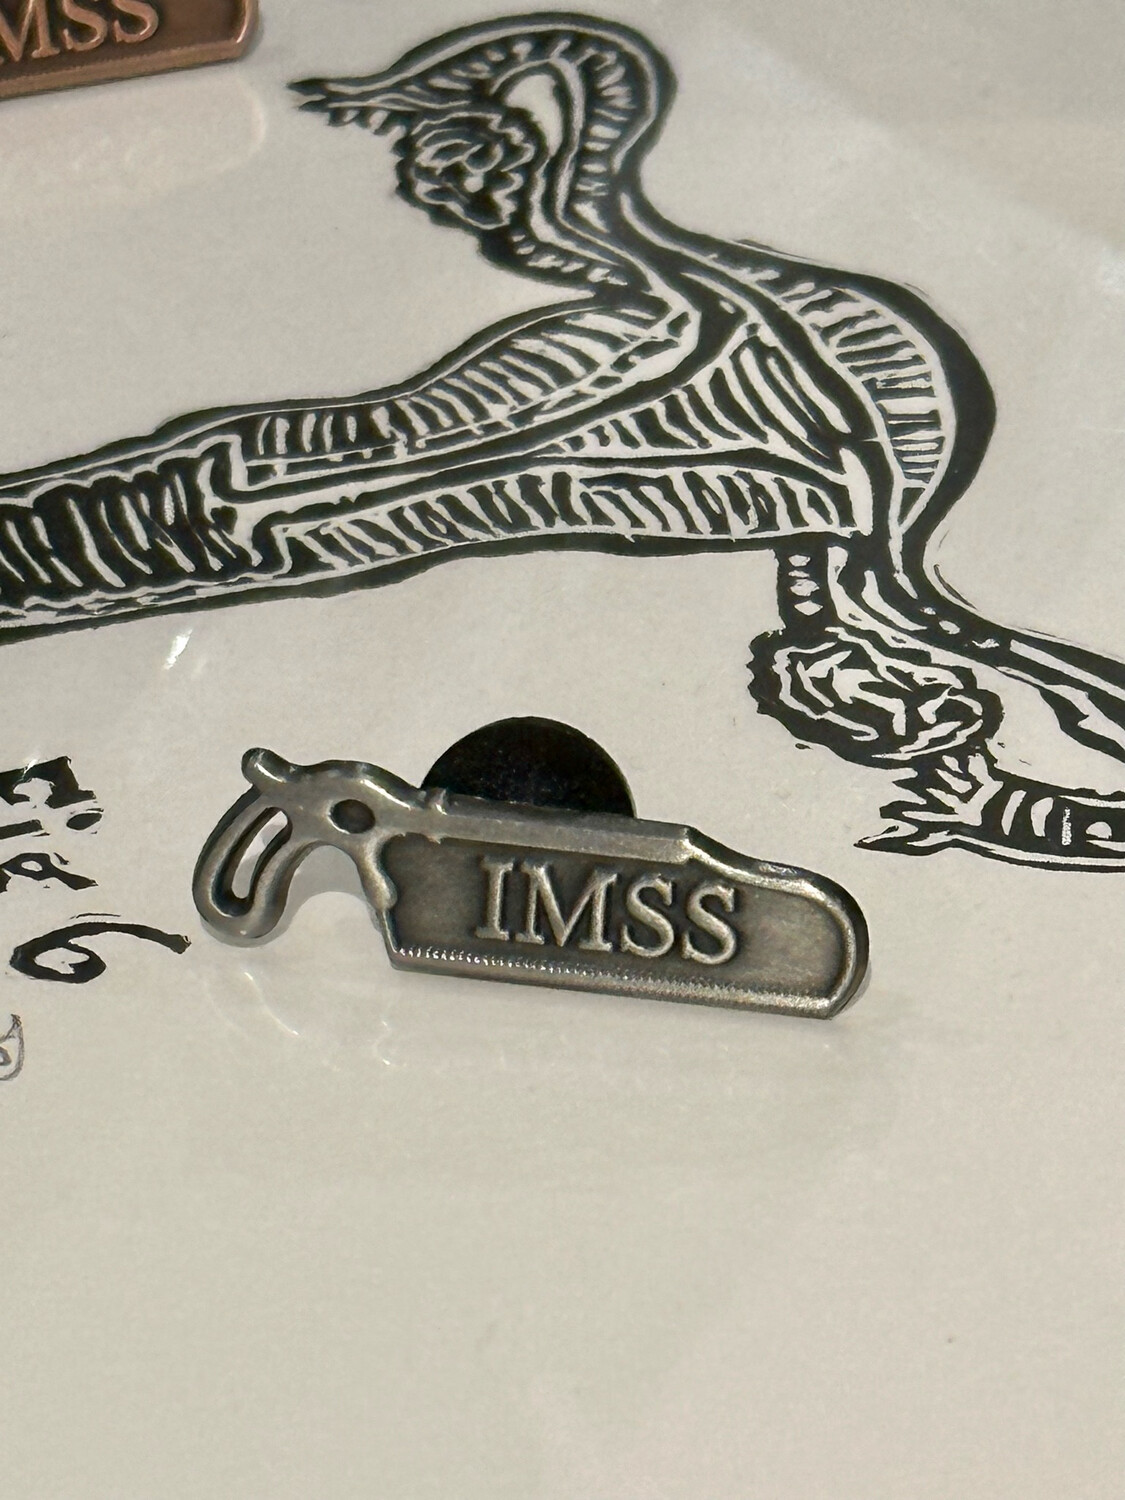 IMSS Bone Saw Pin (Silver)